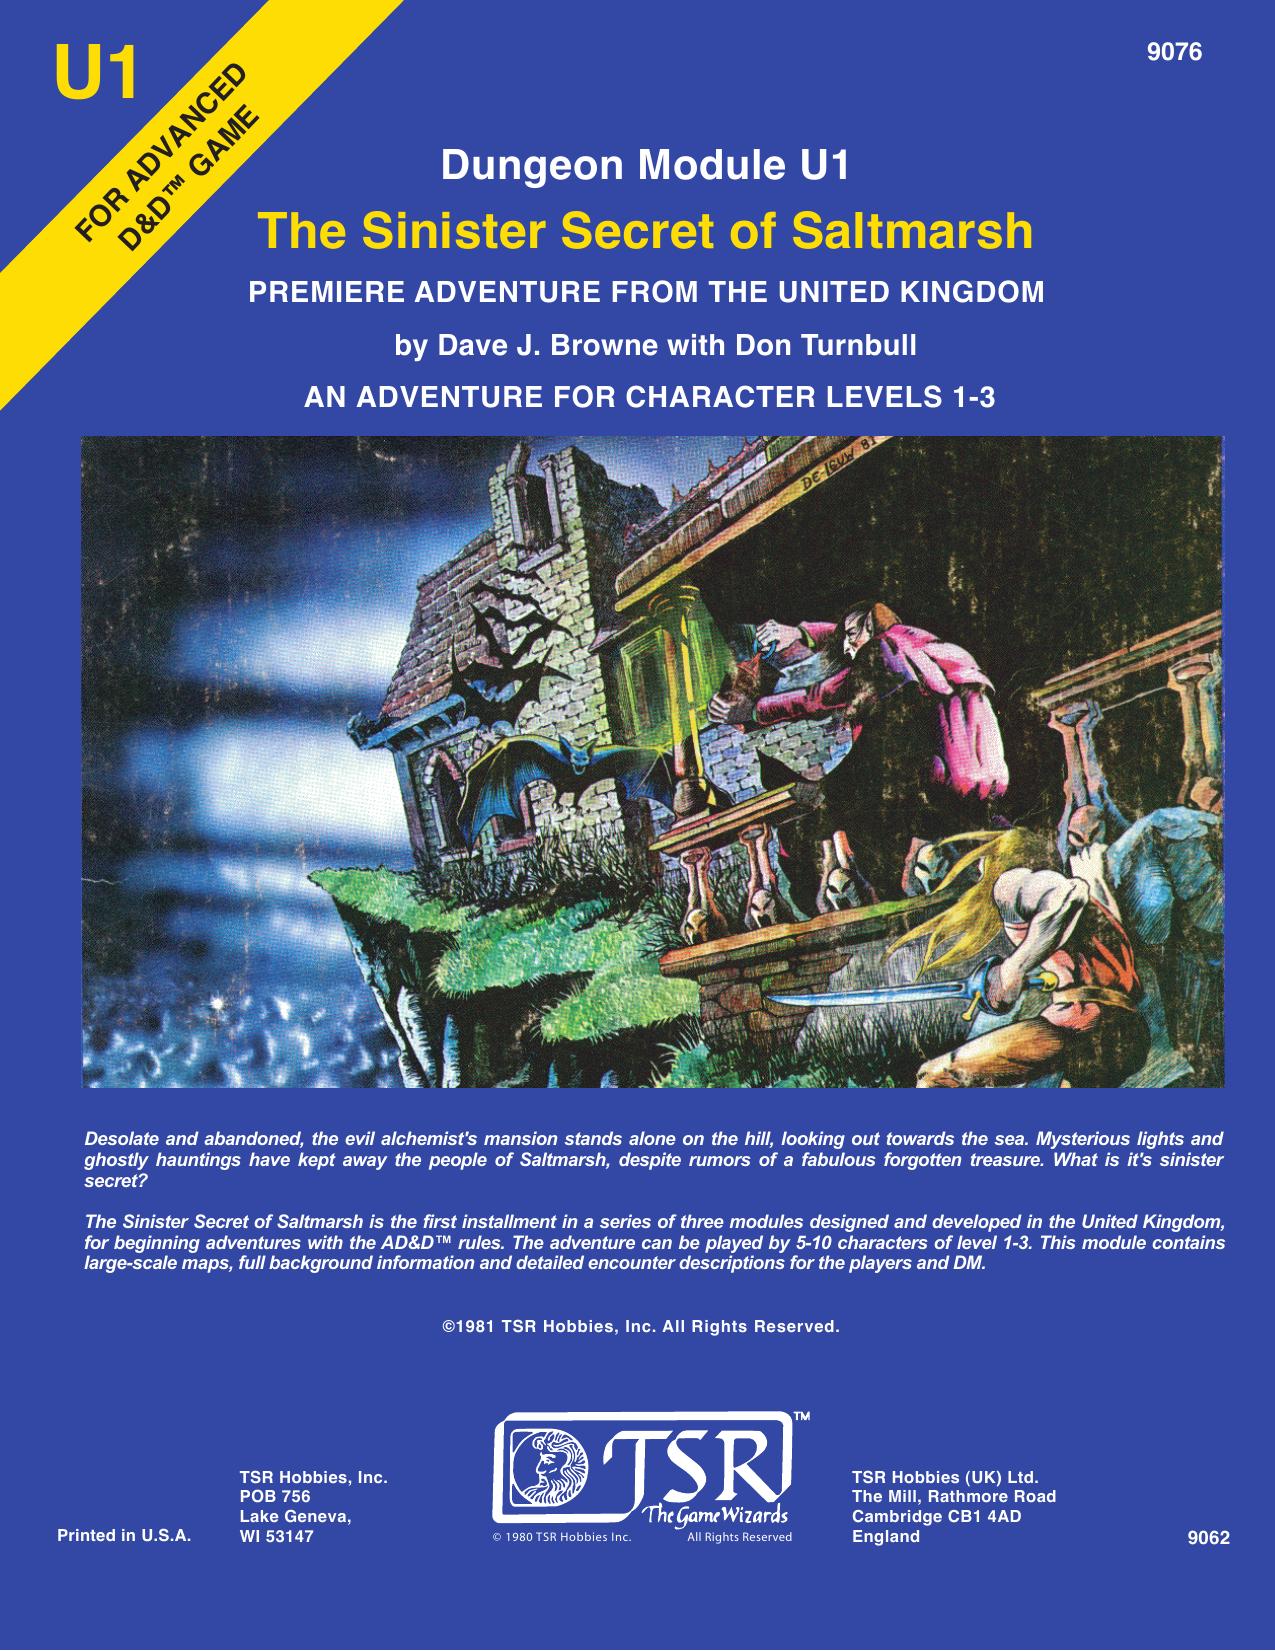 Sinister Secret of Saltmarsh